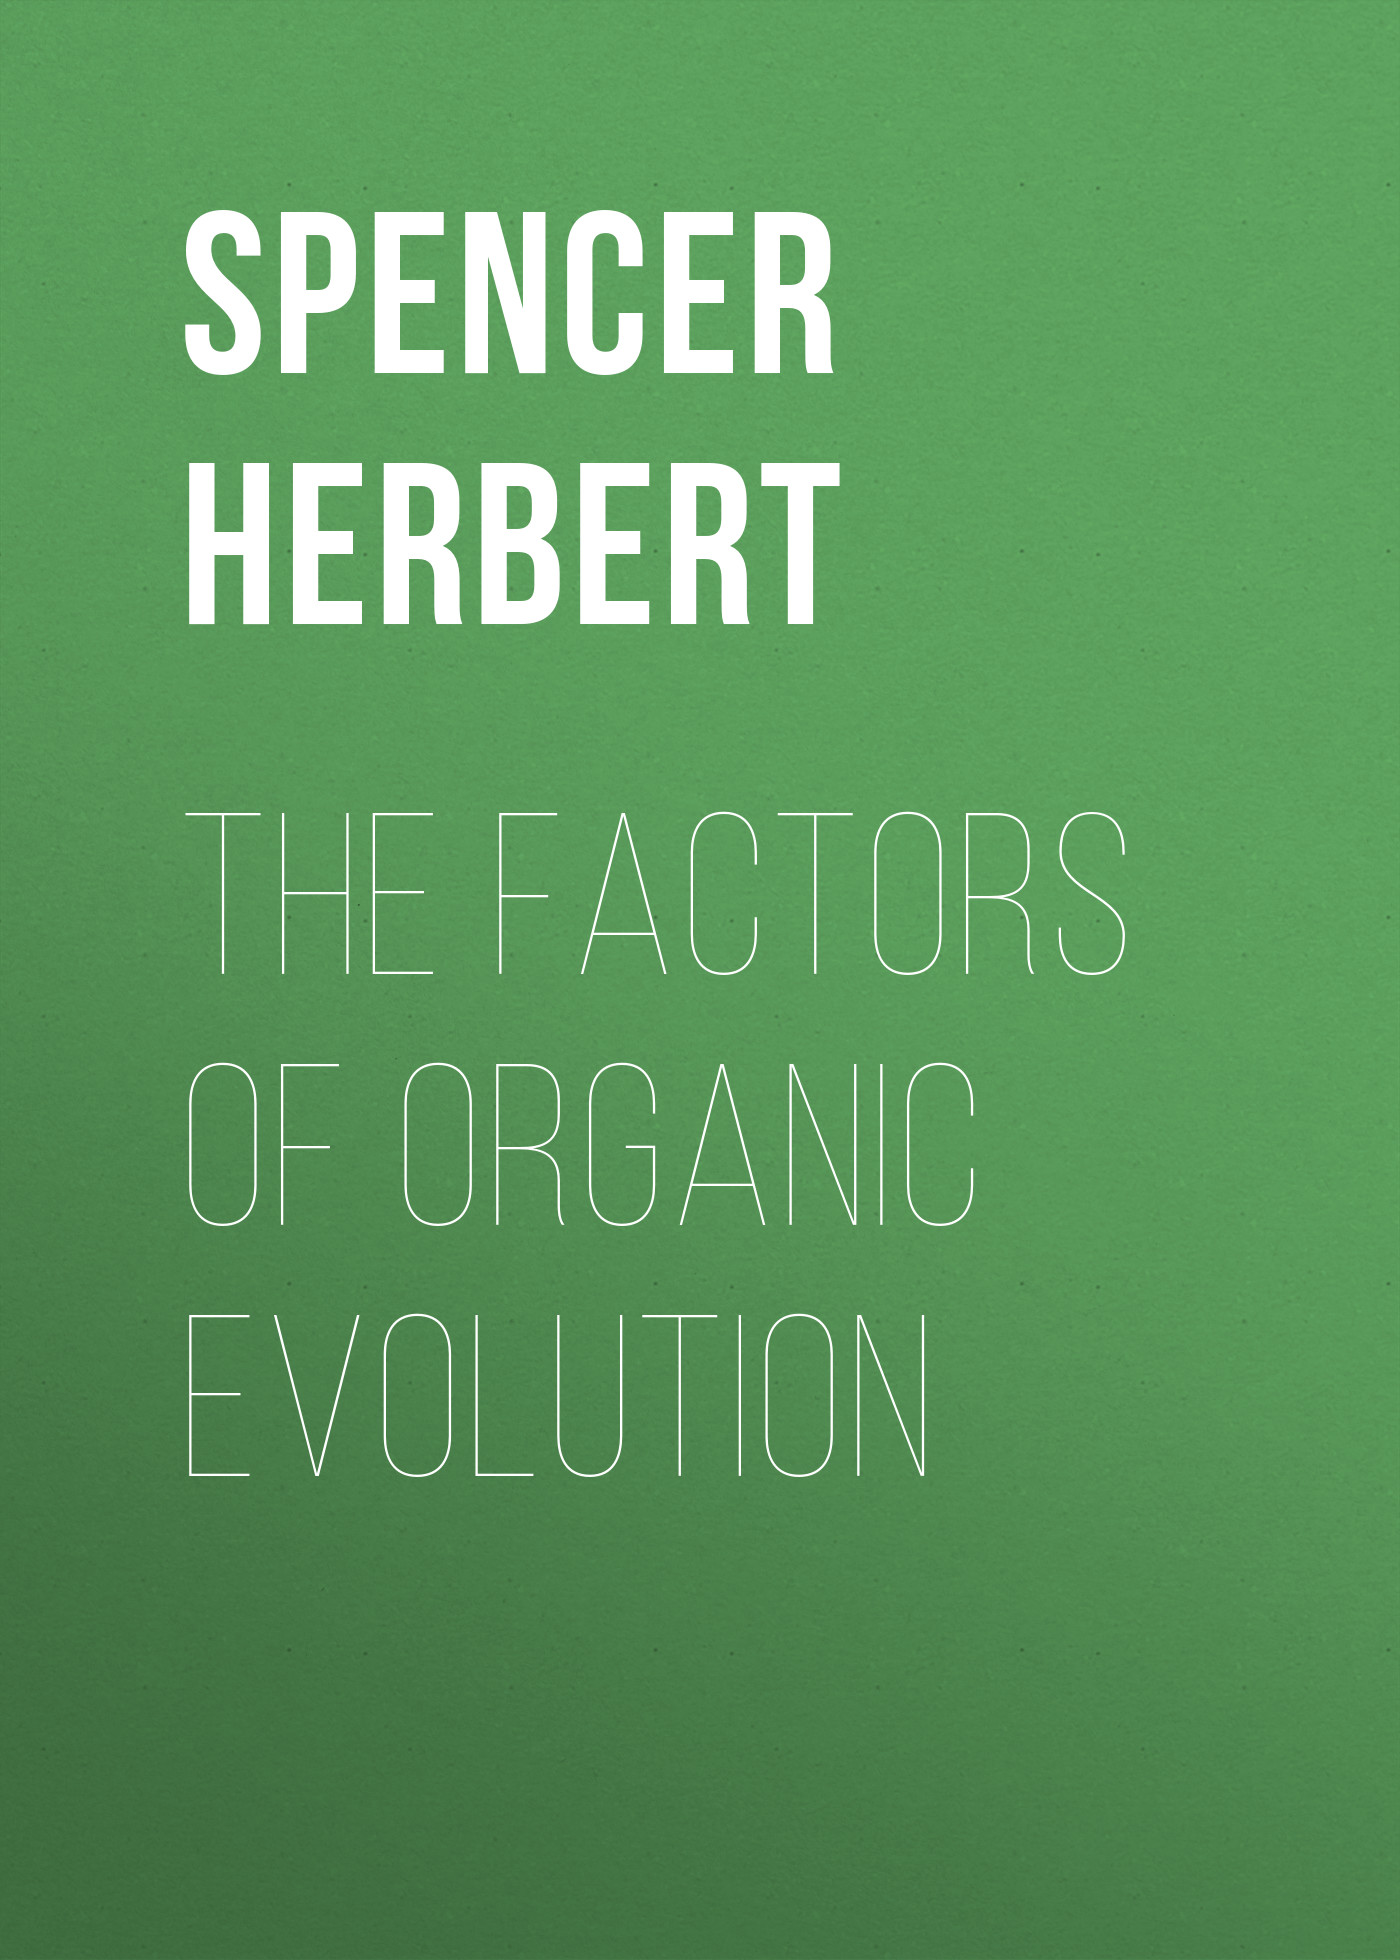 Книга The Factors of Organic Evolution из серии , созданная Herbert Spencer, может относится к жанру Философия, Зарубежная старинная литература, Зарубежная классика. Стоимость книги The Factors of Organic Evolution  с идентификатором 25477215 составляет 0 руб.